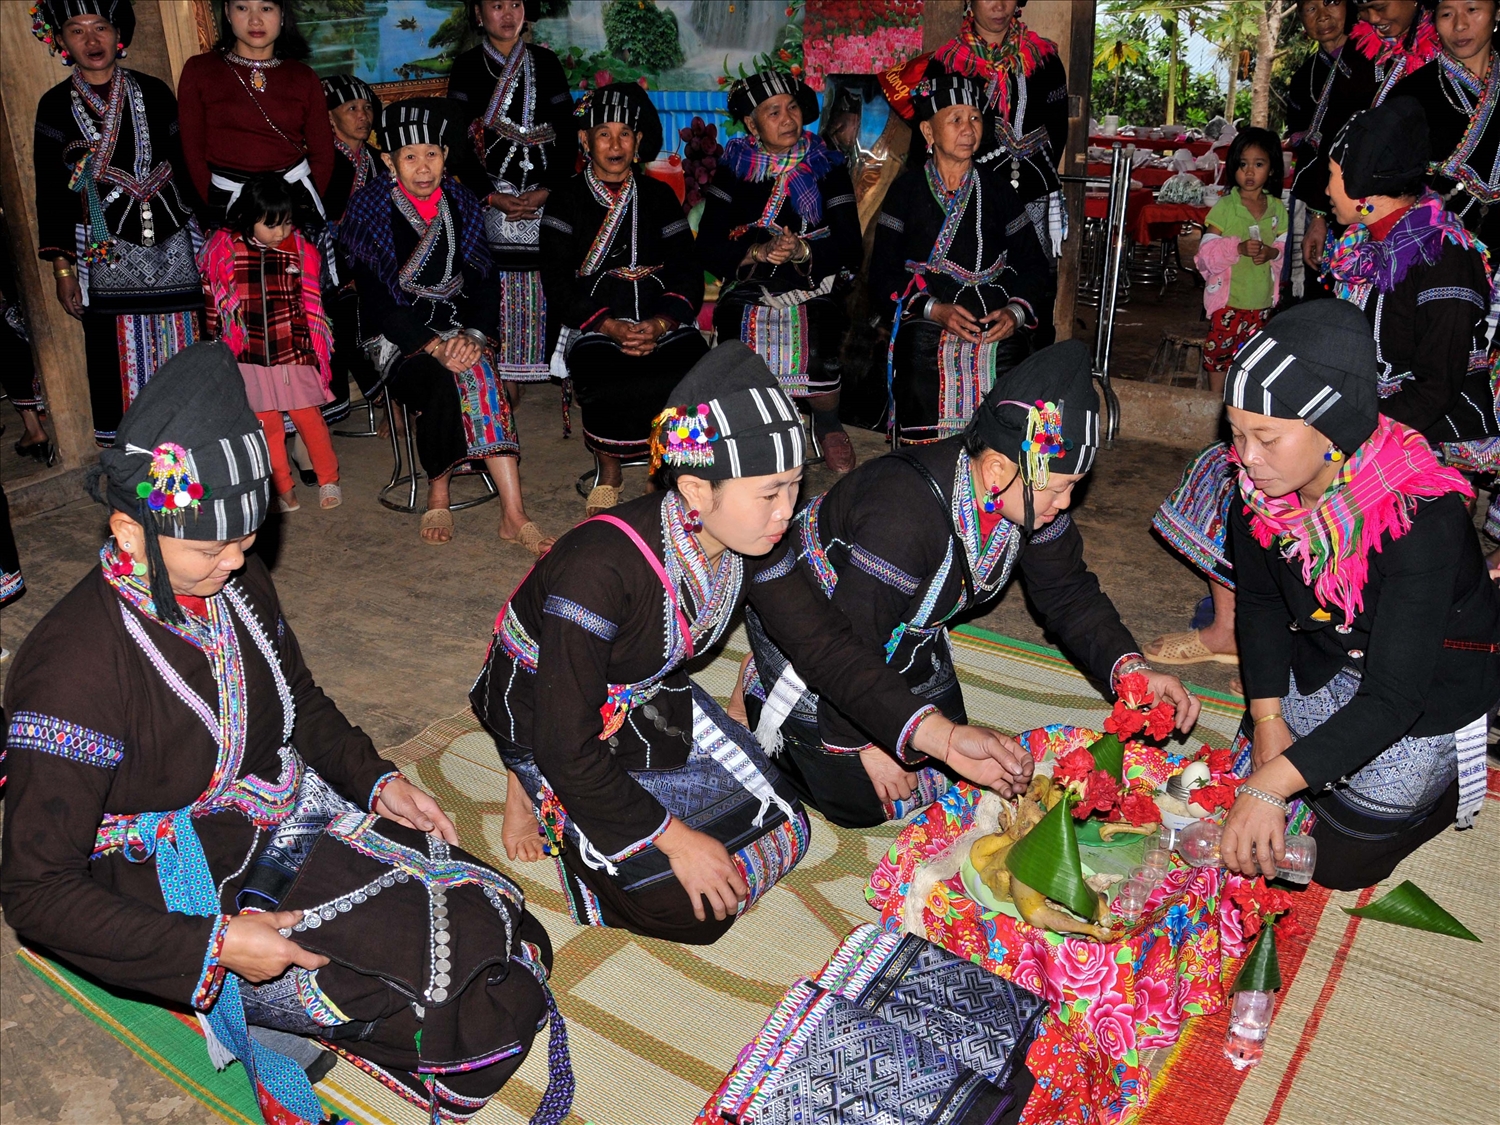 Mâm lễ “buộc chỉ cổ tay” trong đám cưới truyền thống của người Lự ở Lai Châu.